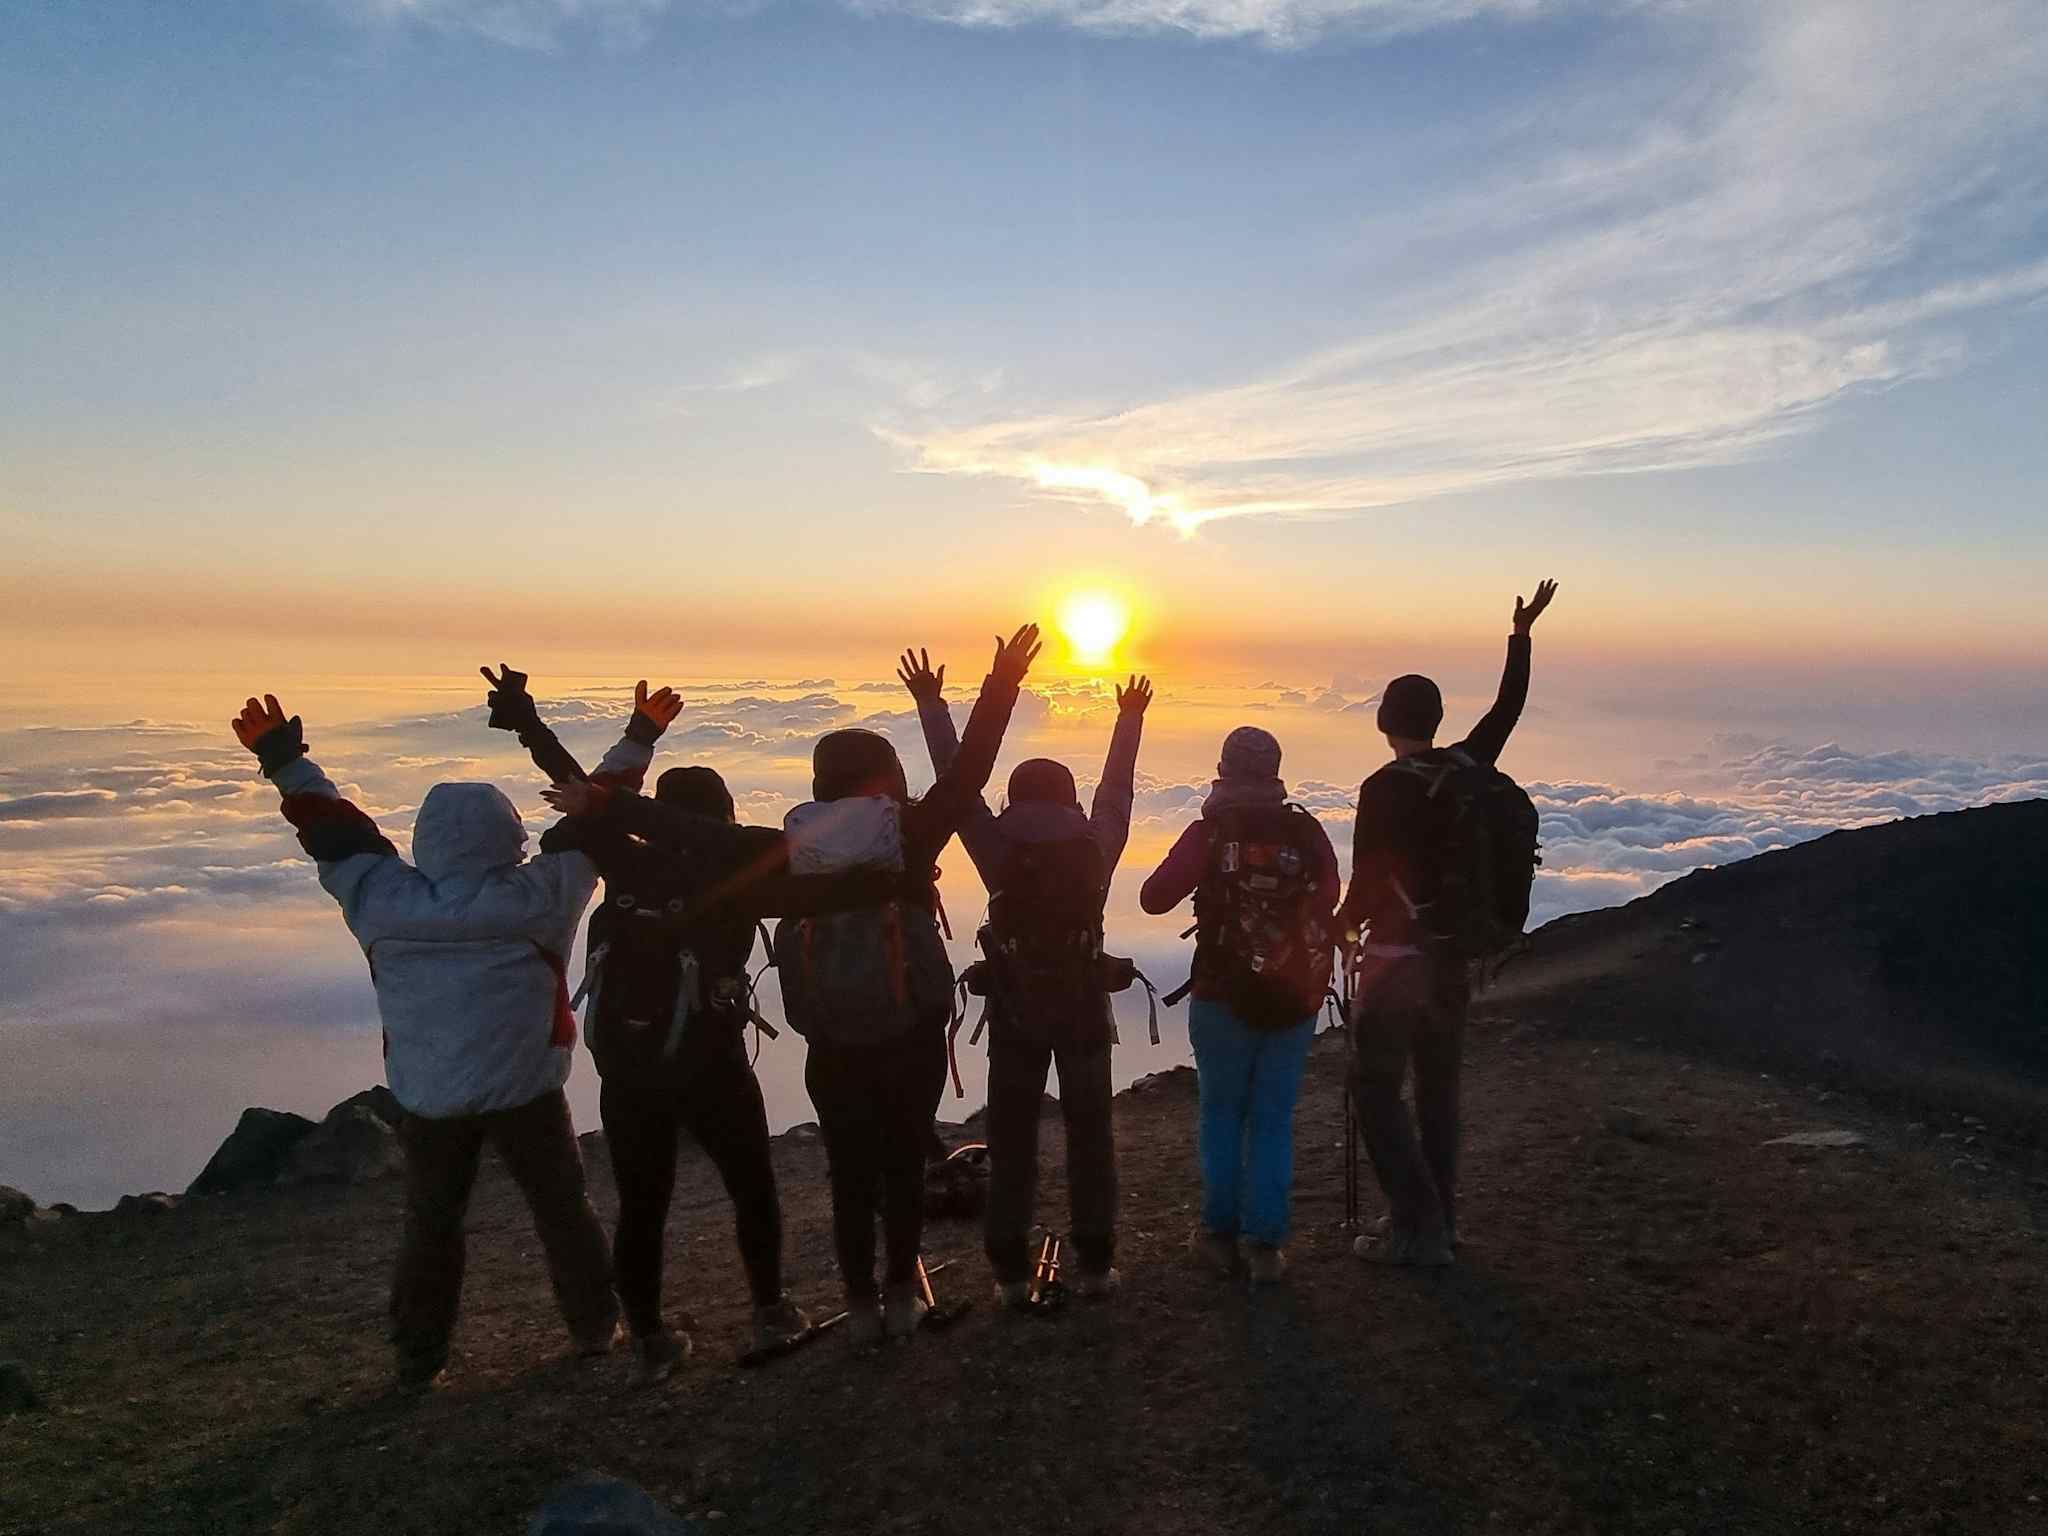 Group of hikers watching sunset at the summit of Acatenango, Guatemala.